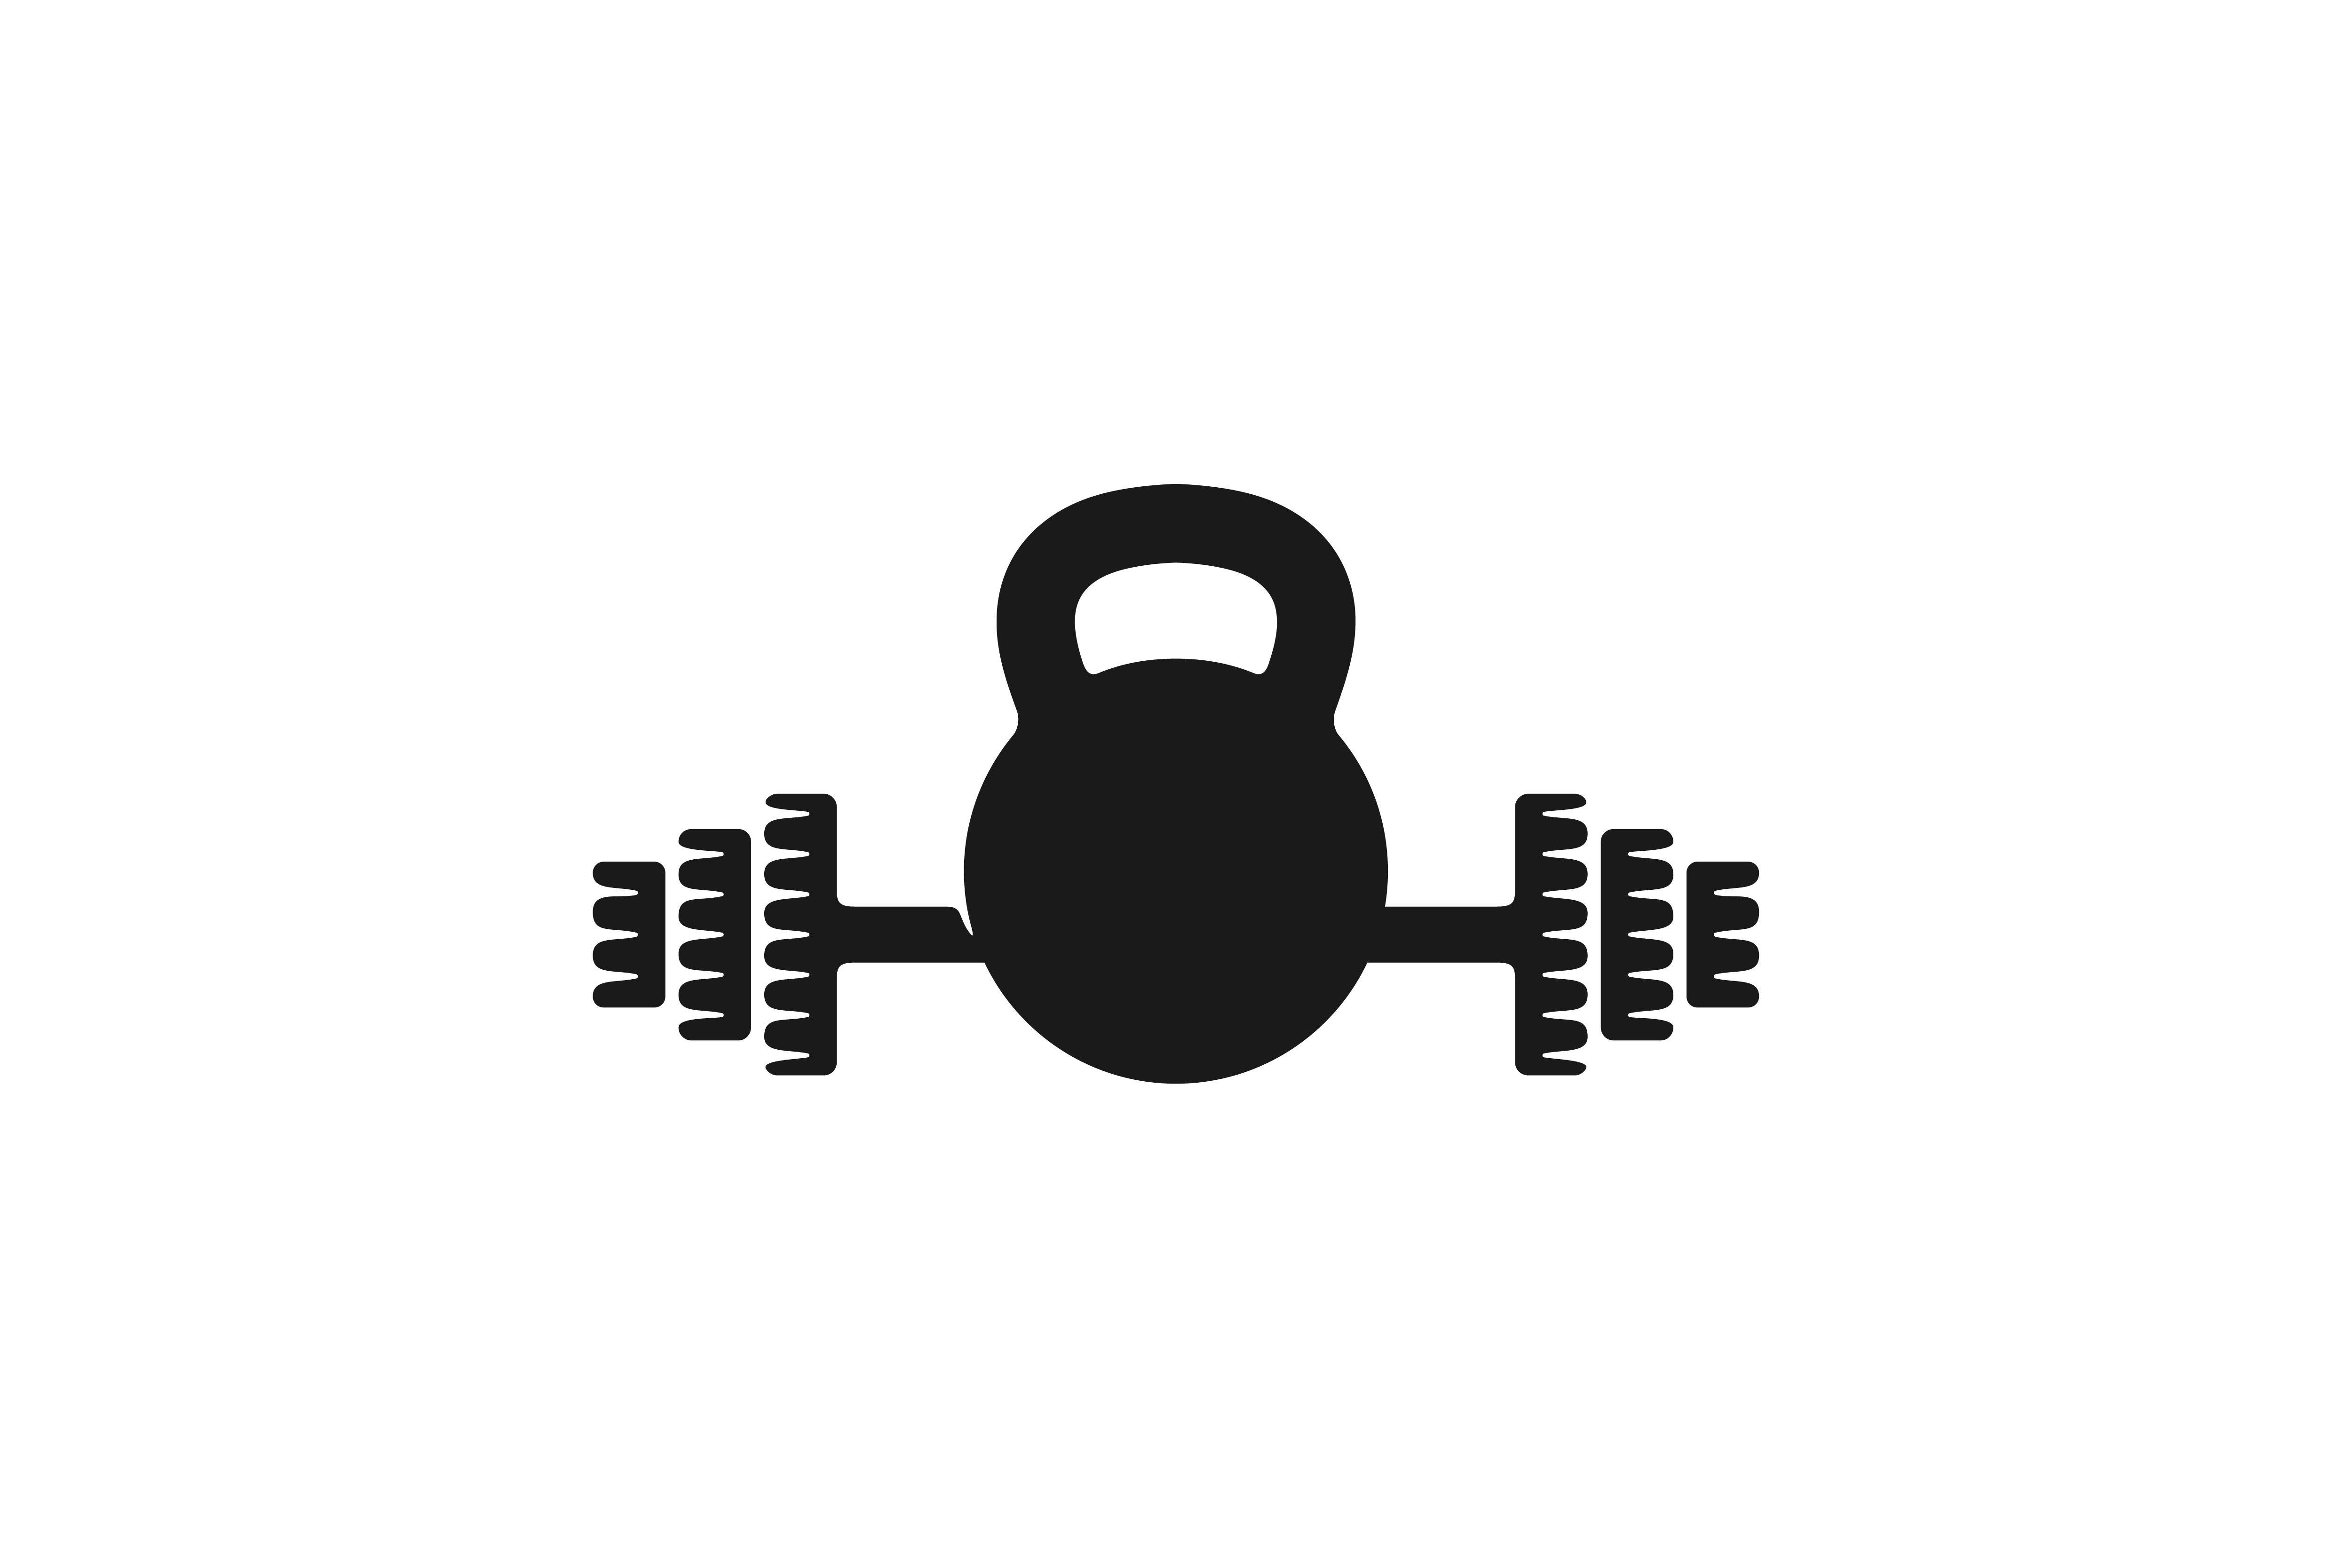 Kettlebell Logo - Barbel Gym Dumbbell fitness Logo Designs Inspiration, Vector Illustration